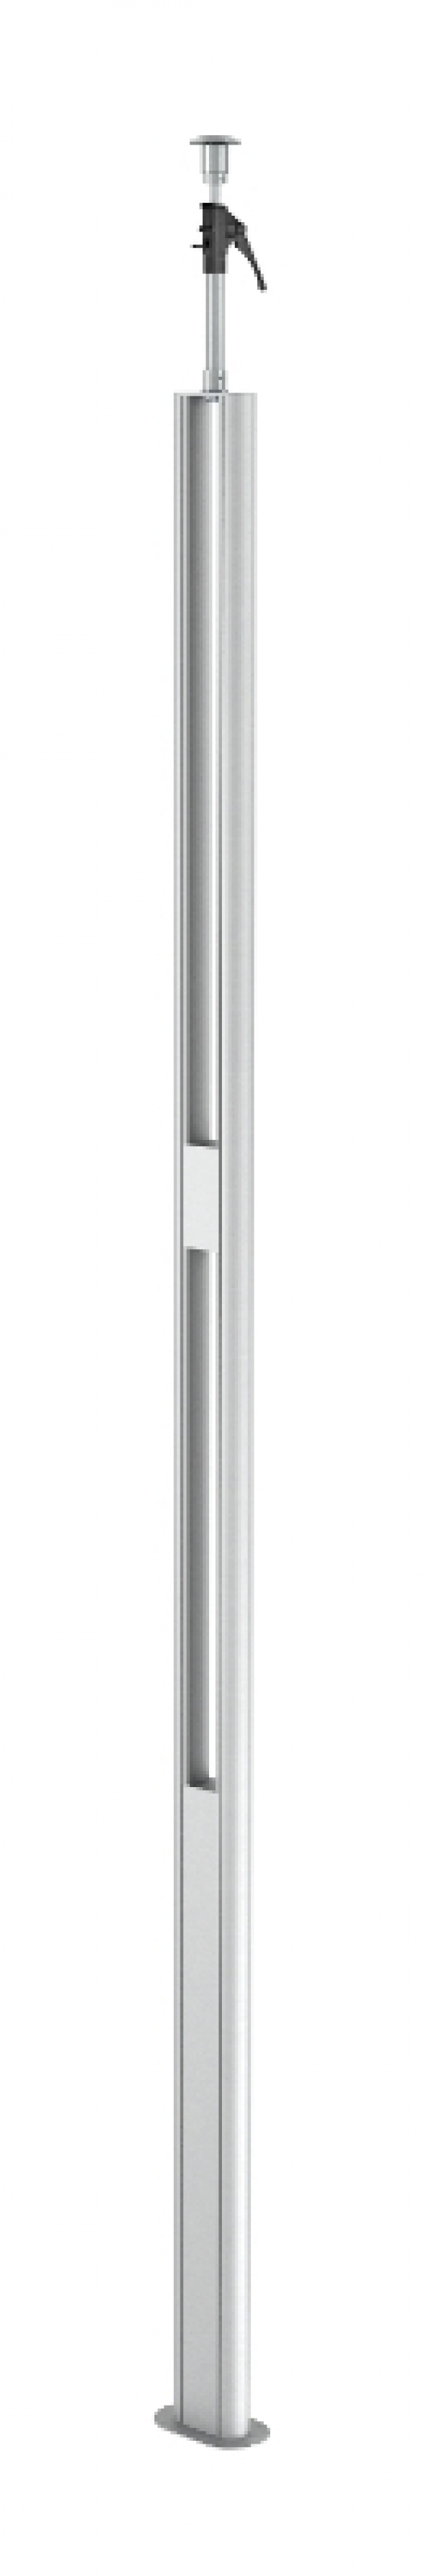 6290013 - OBO BETTERMANN Электромонтажная колонна 3,3-3,5 м 1-сторонняя 64x145x3000 мм (алюминий) (ISST70140BEL).